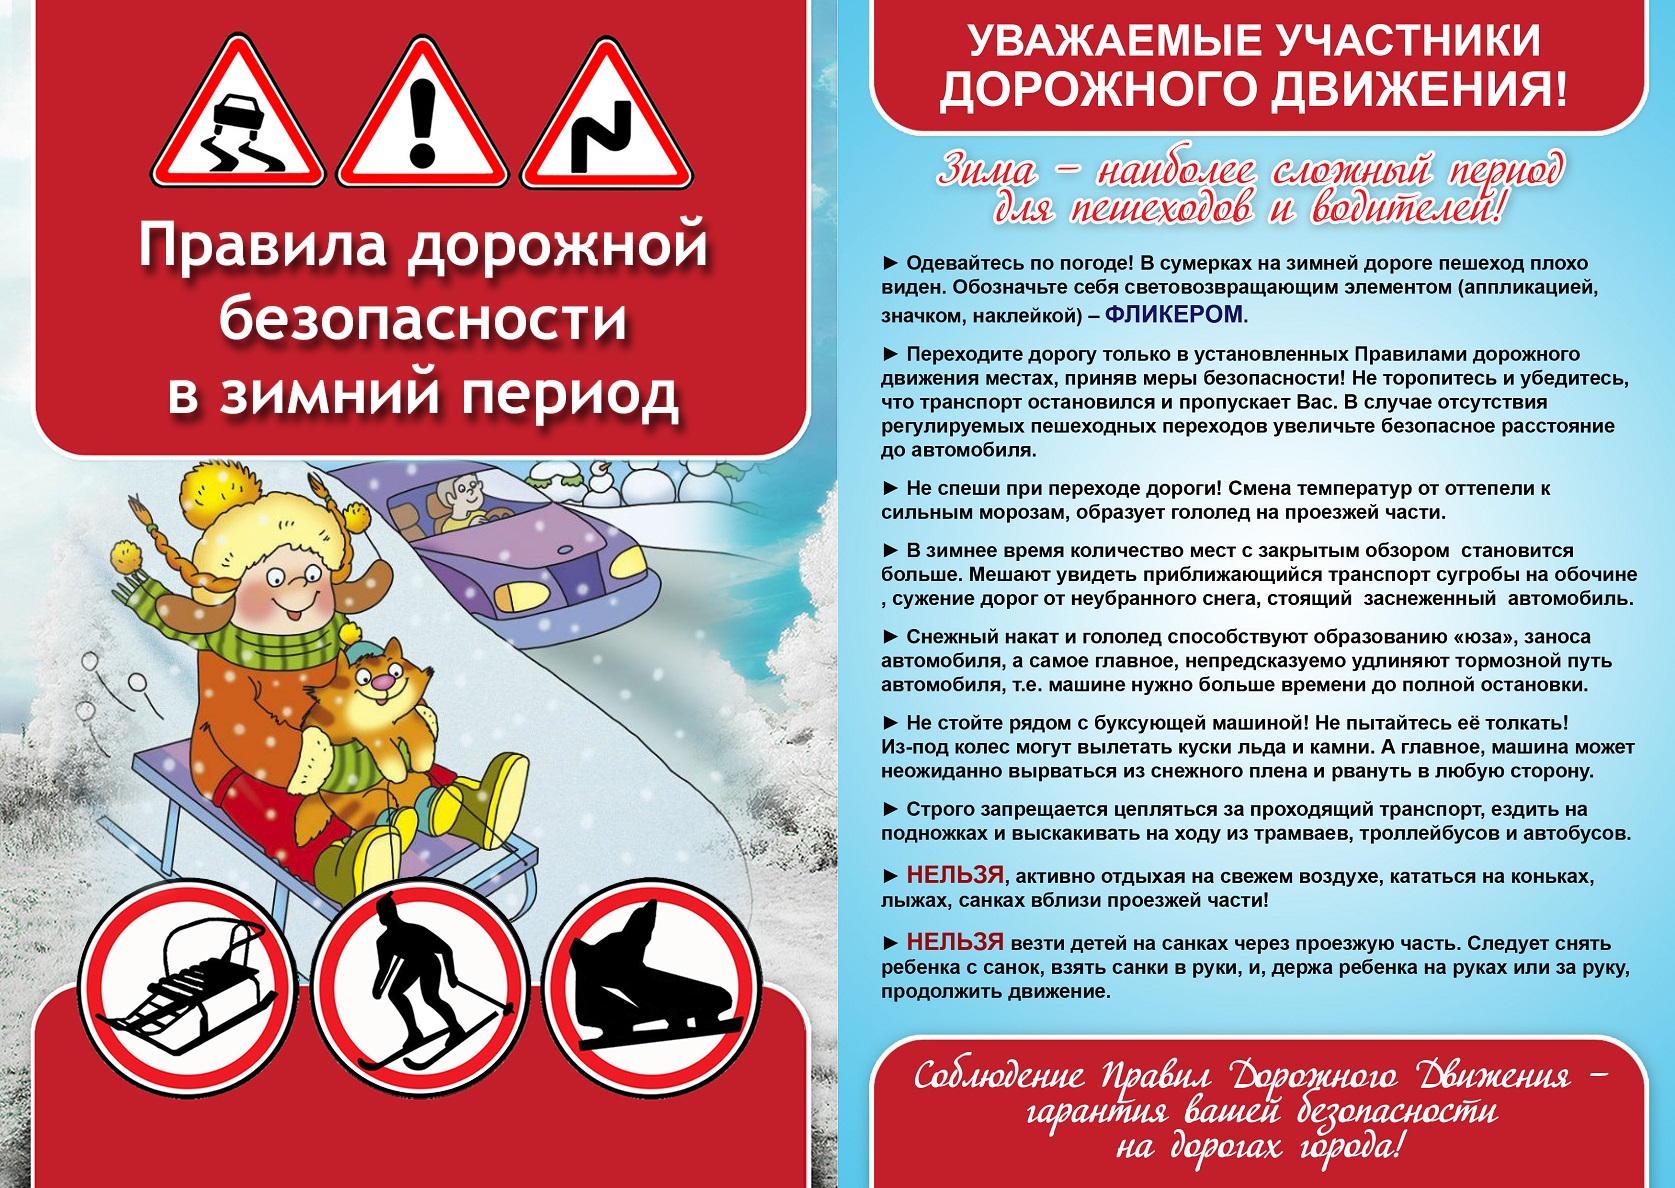 Памятка "Правила дорожной безопасности в зимний период"